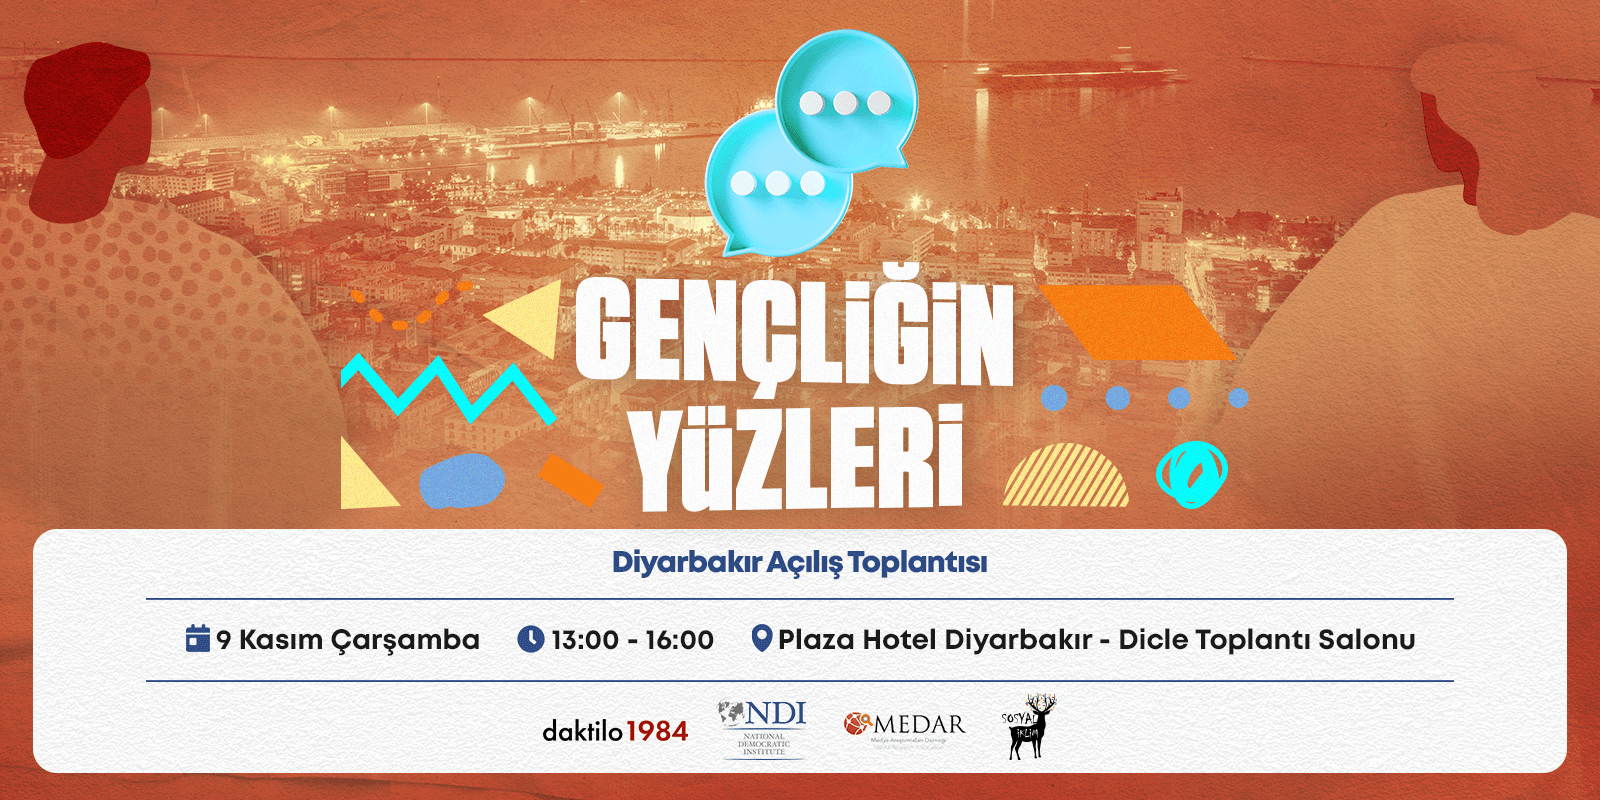 Gençliğin Yüz’leri Diyarbakır Açılış Toplantısı 9 Kasım Çarşamba Gerçekleşecek!